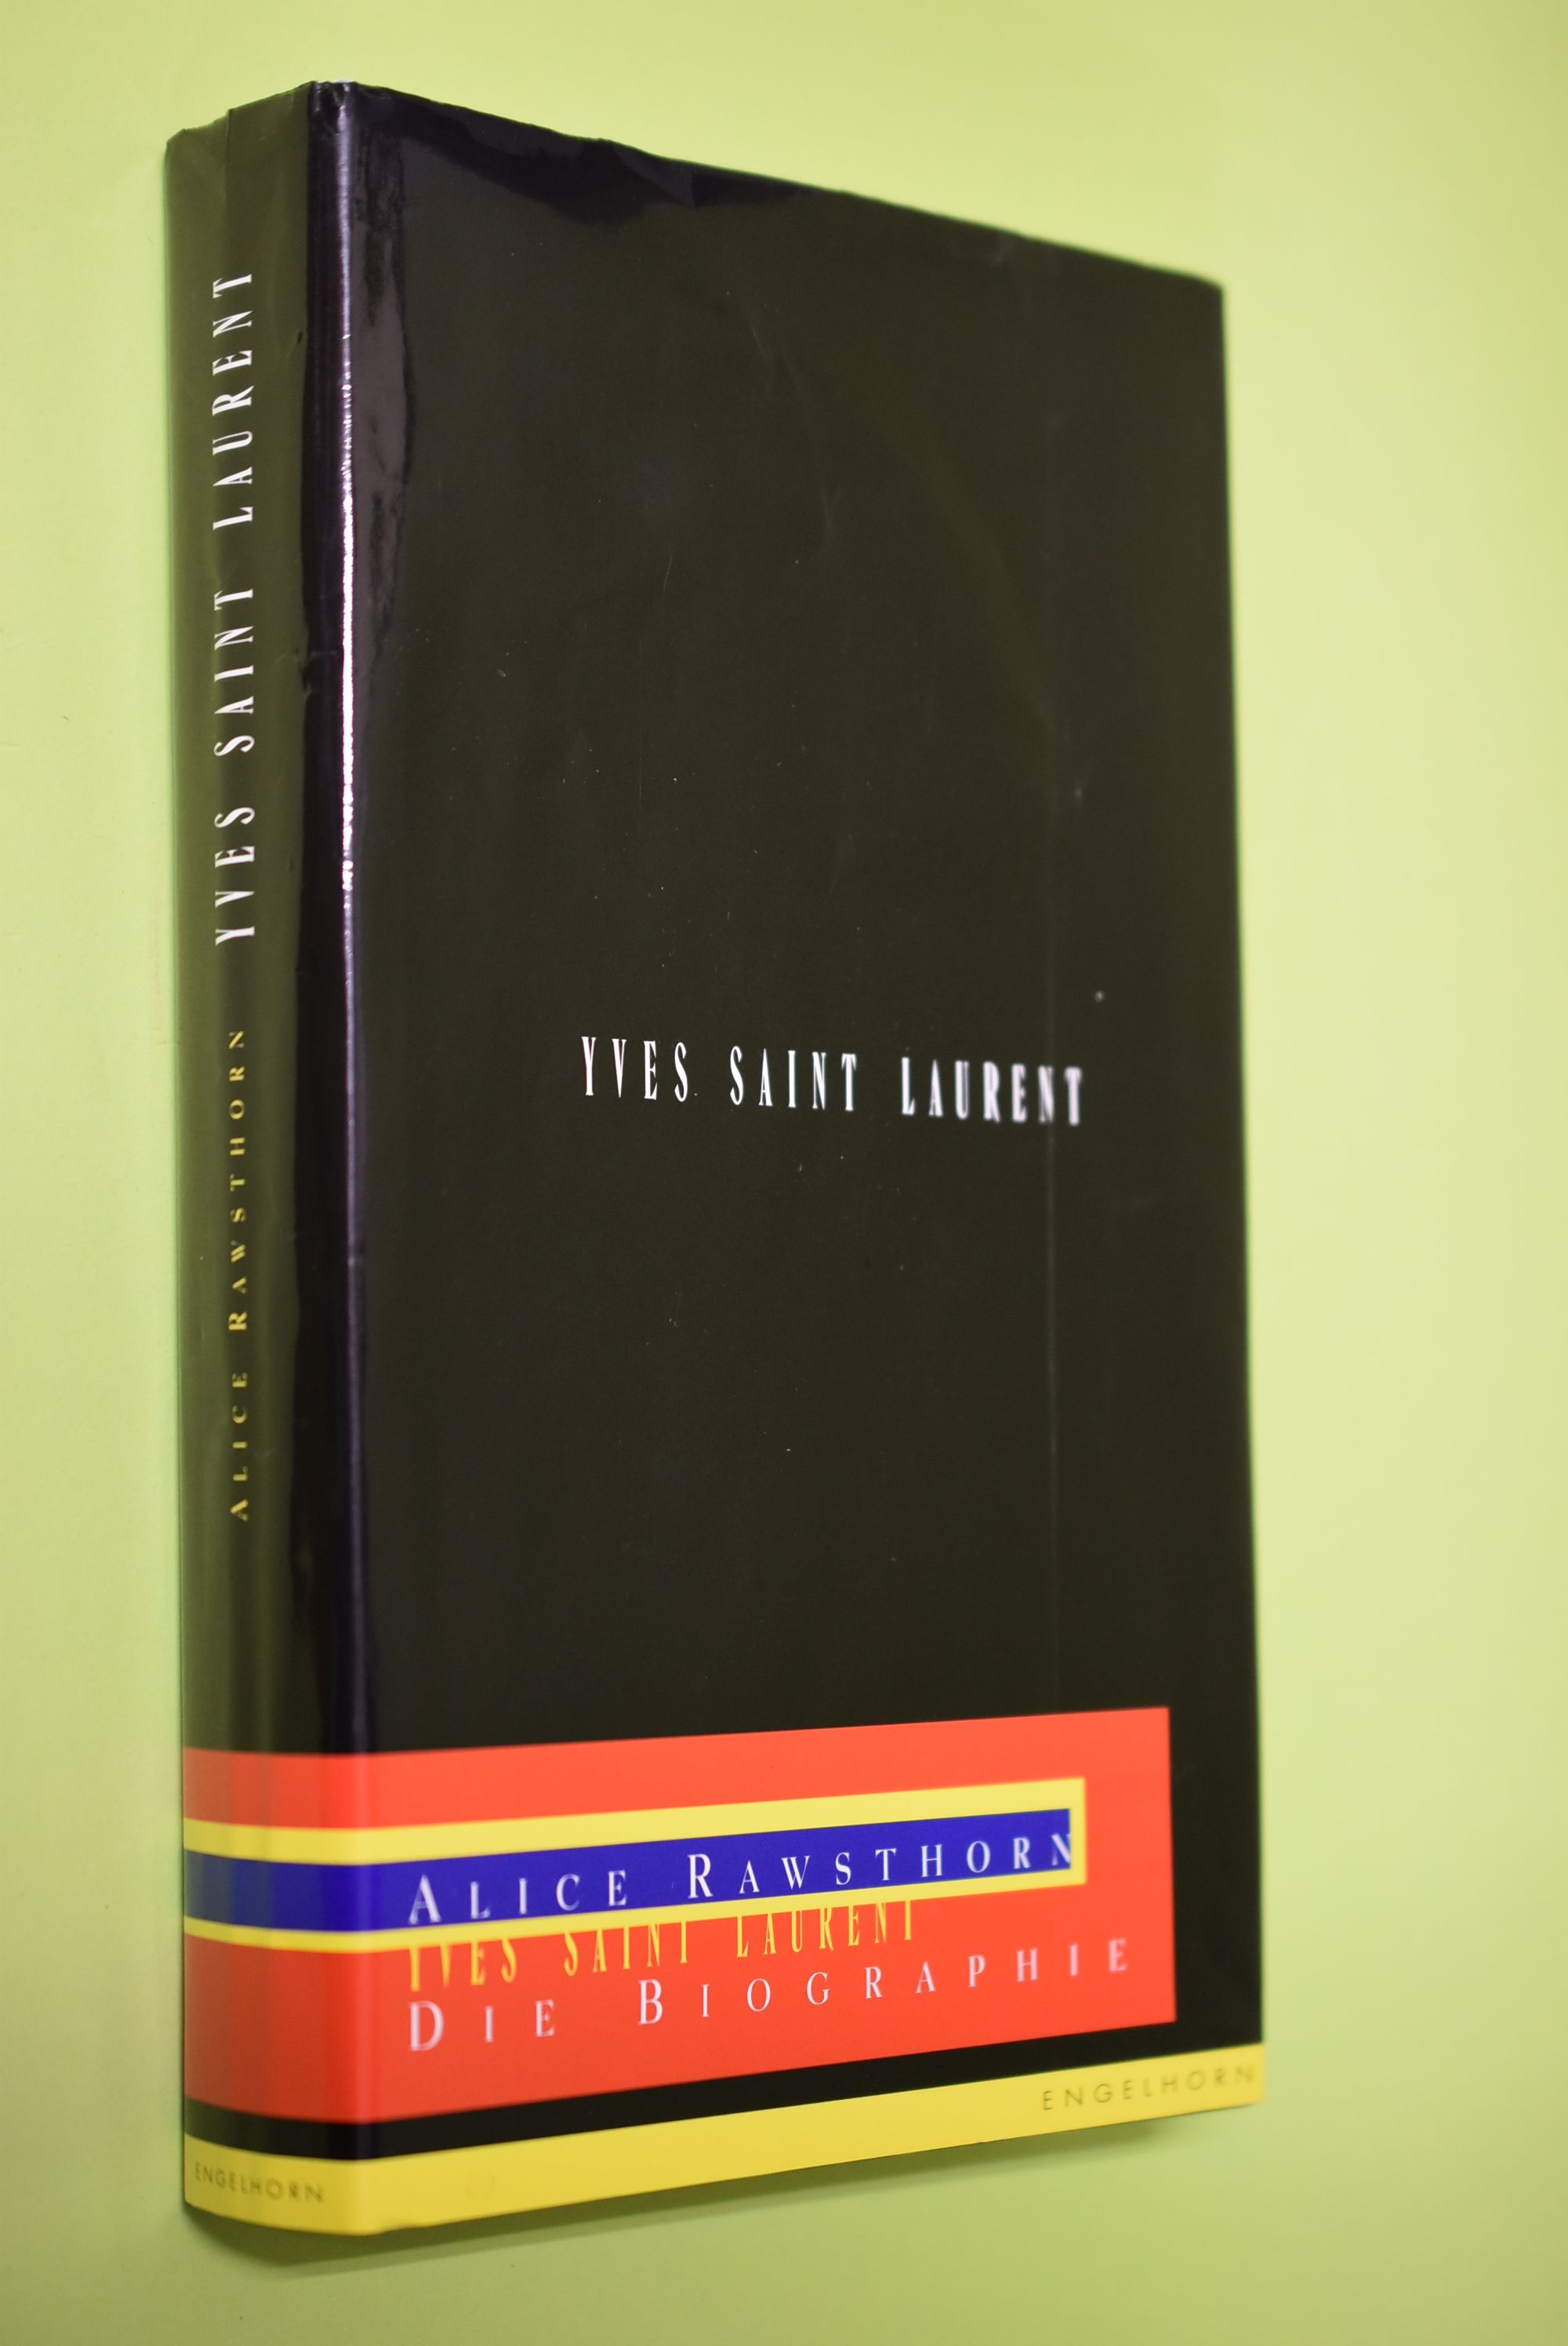 Yves Saint Laurent : die Biographie. Aus dem Engl. von Frank Böhmert - Rawsthorn, Alice